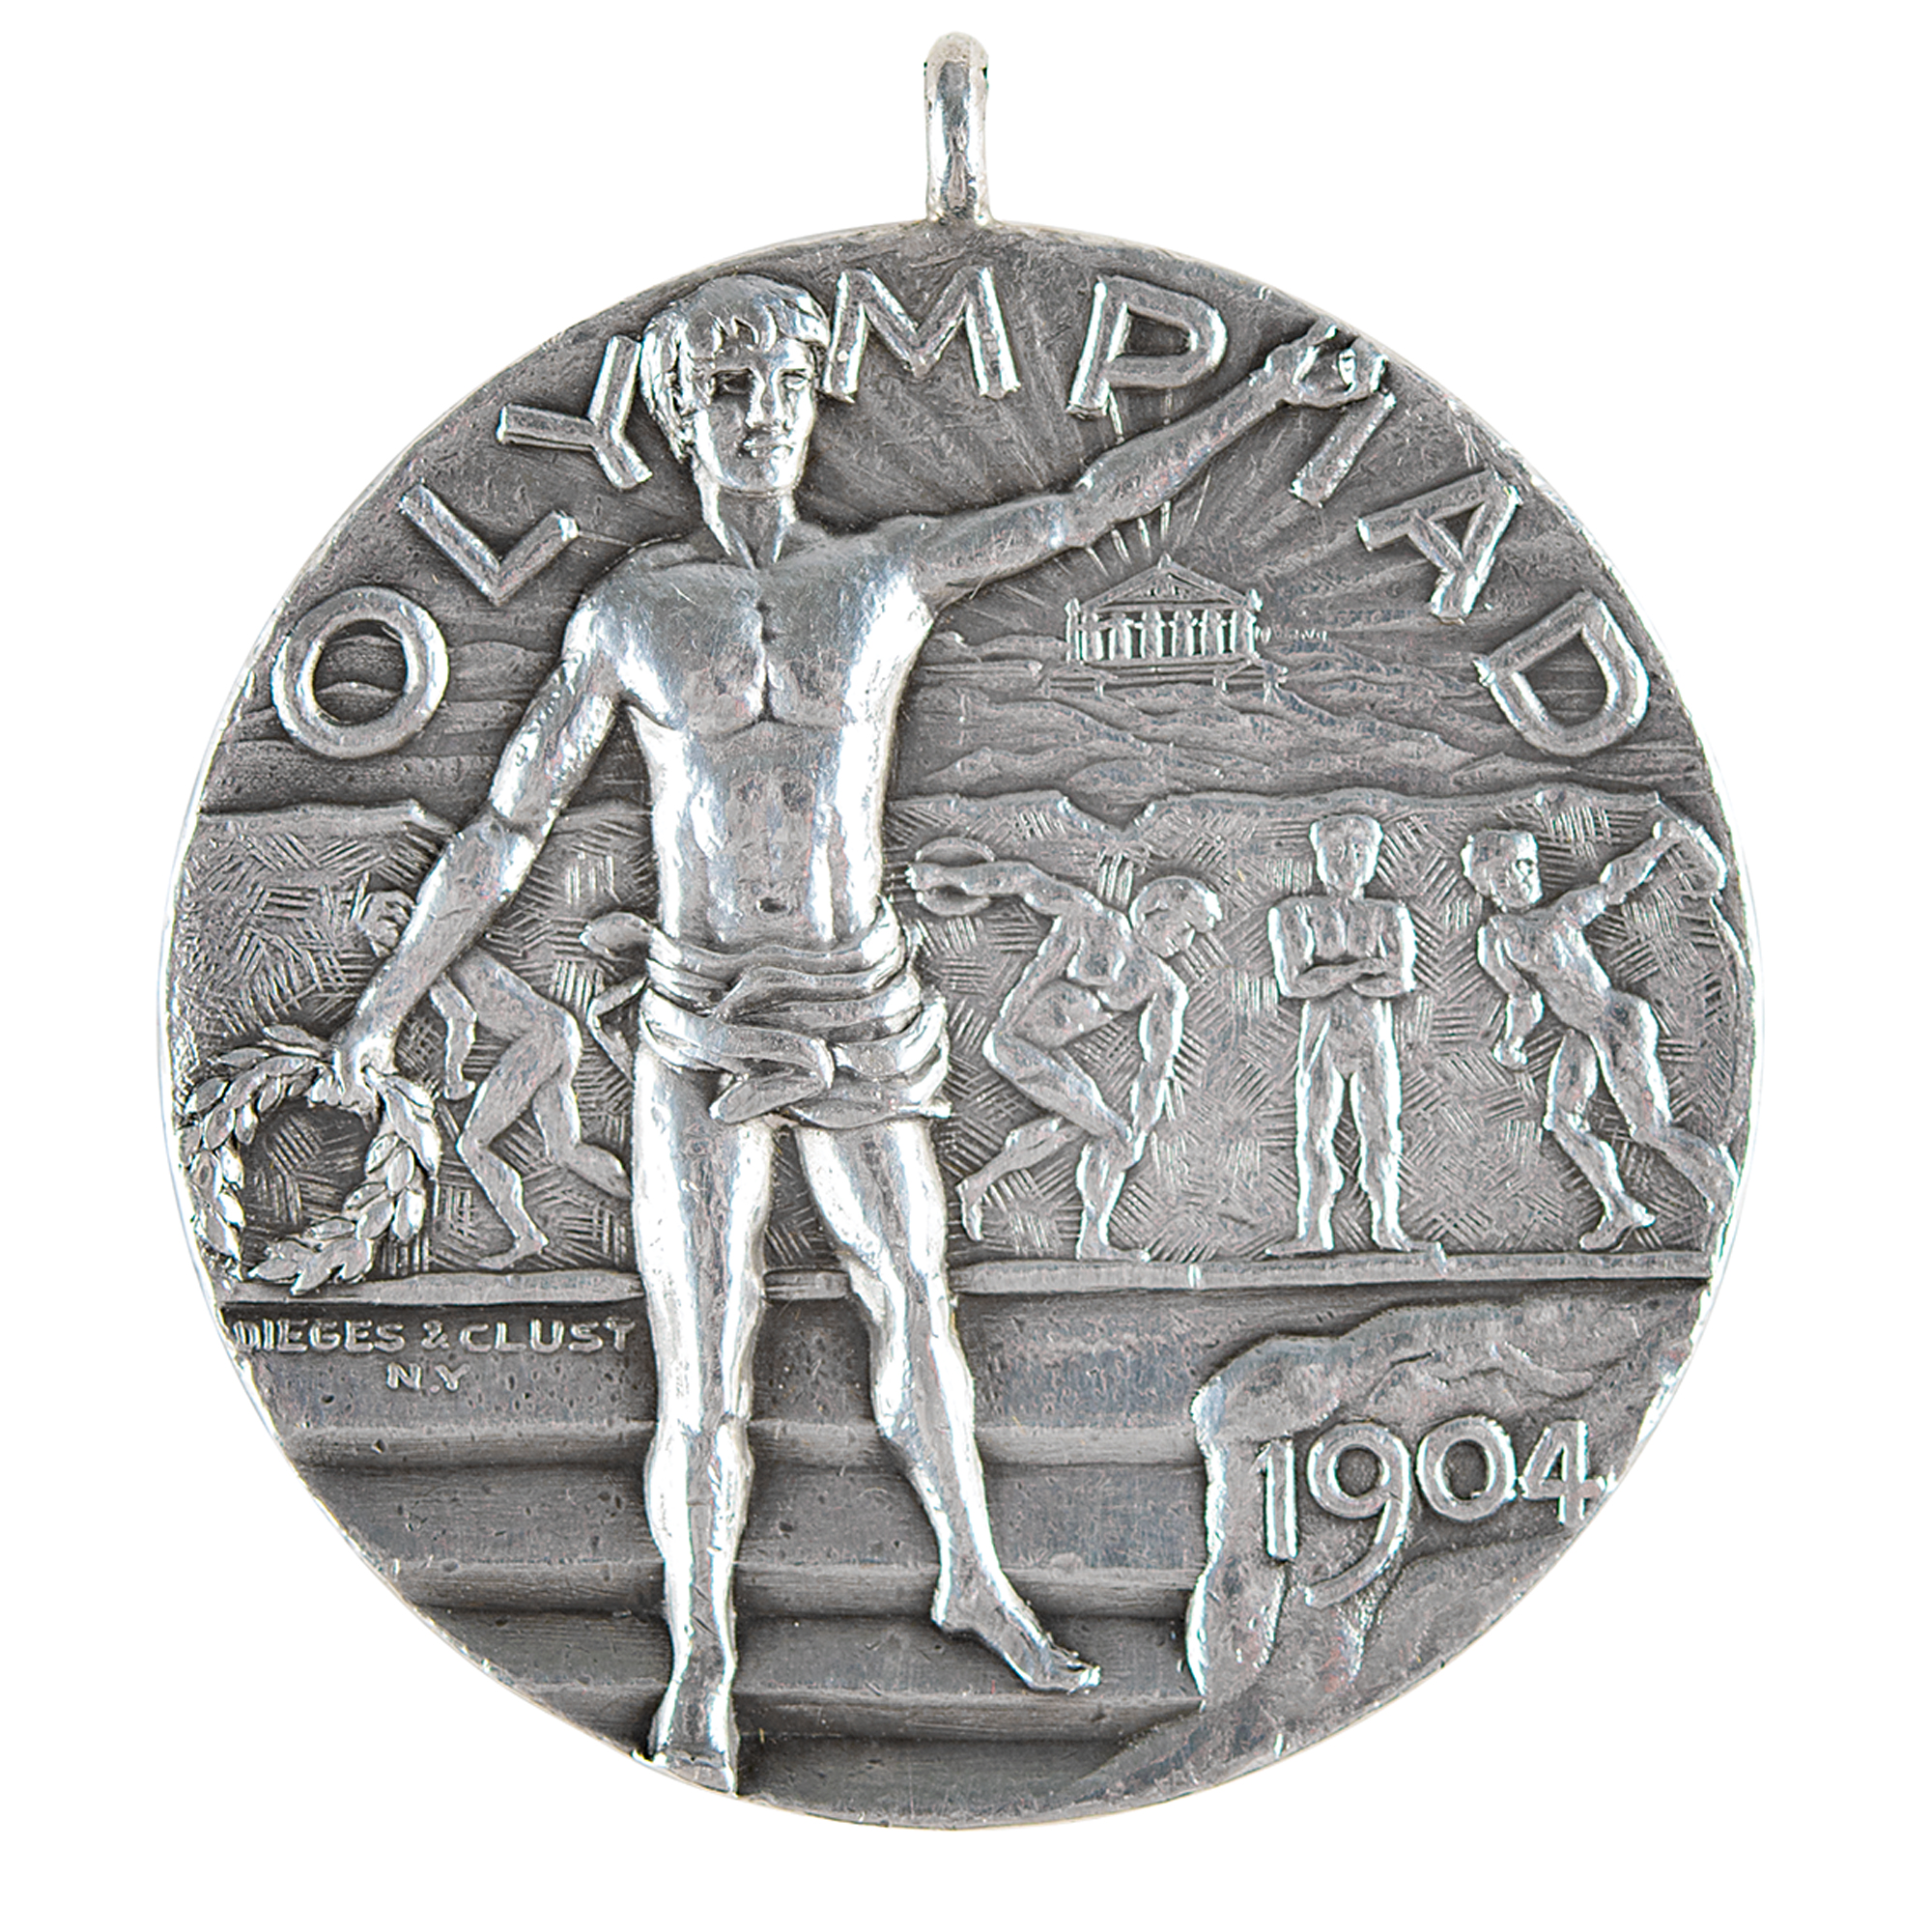 Lot #6013 Daniel Frank's St. Louis 1904 Olympics Silver Winner's Medal